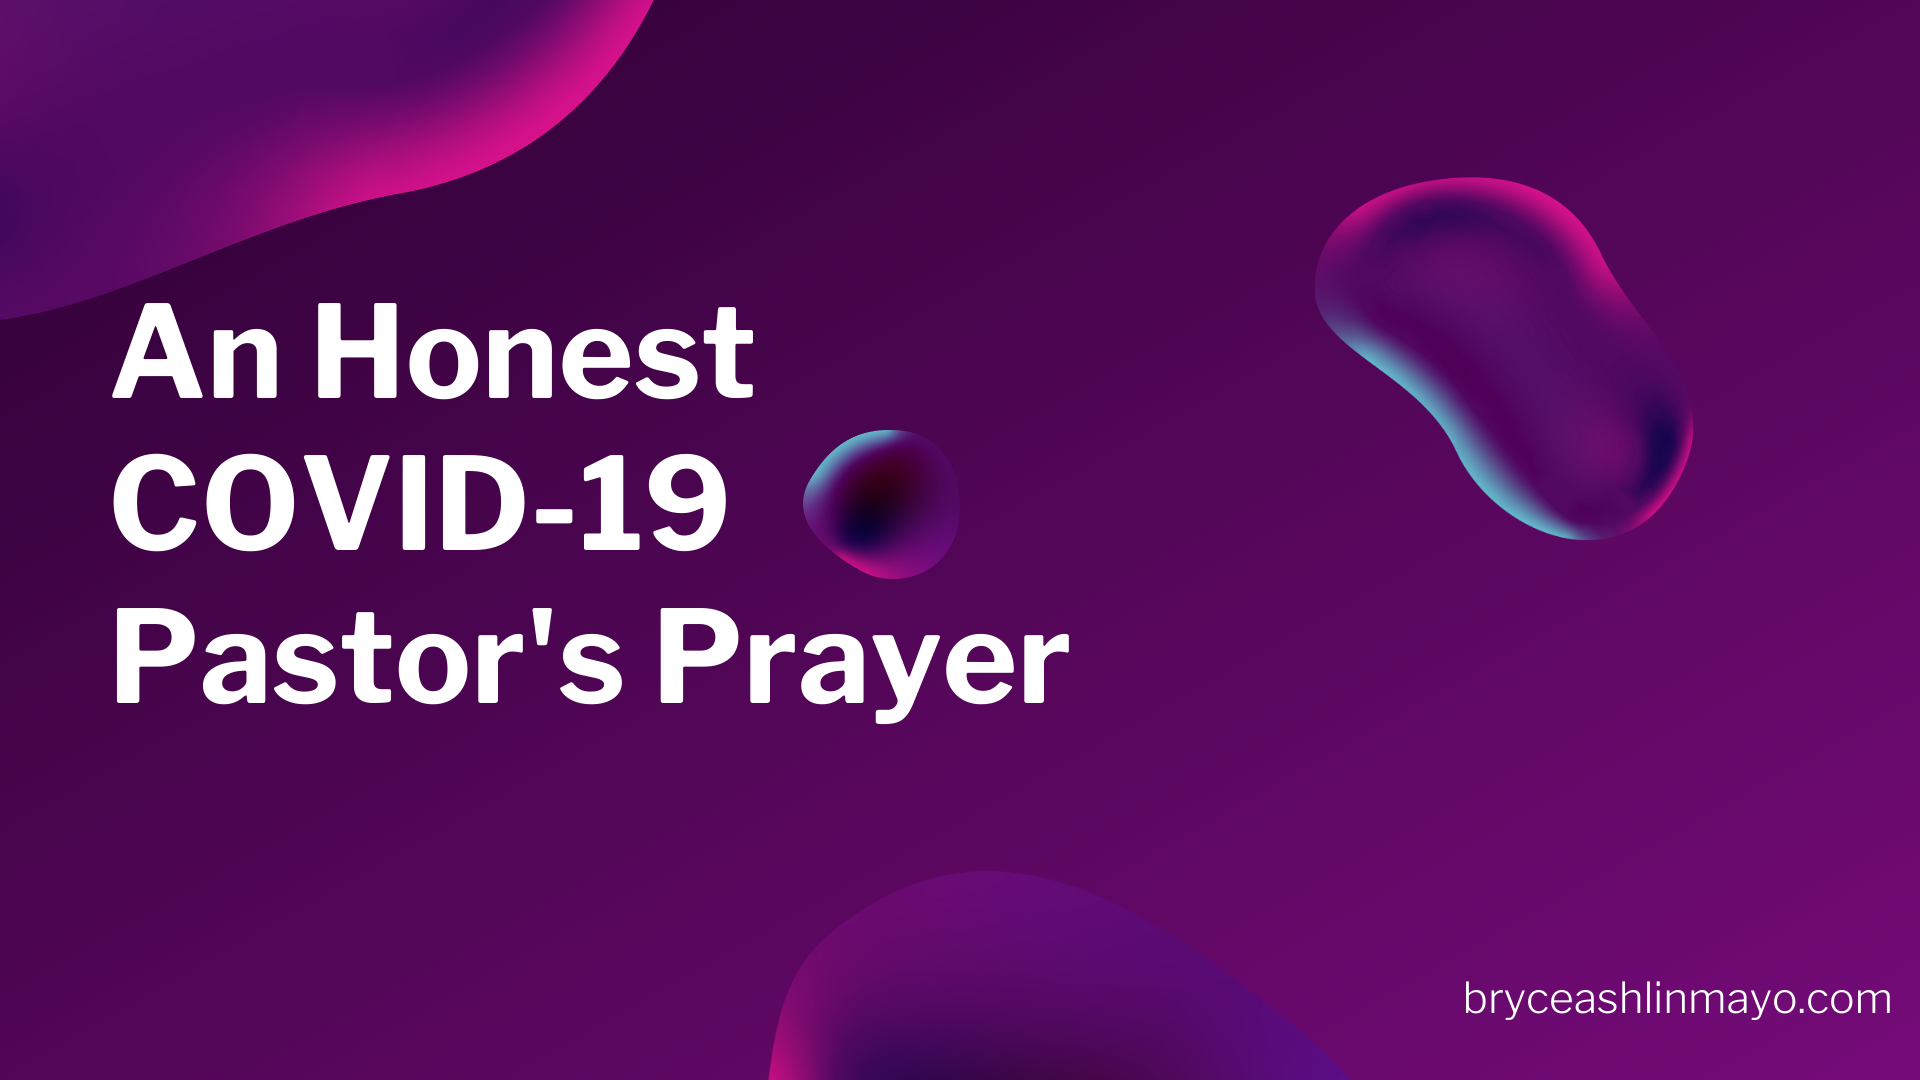 An Honest COVID-19 Pastor’s Prayer